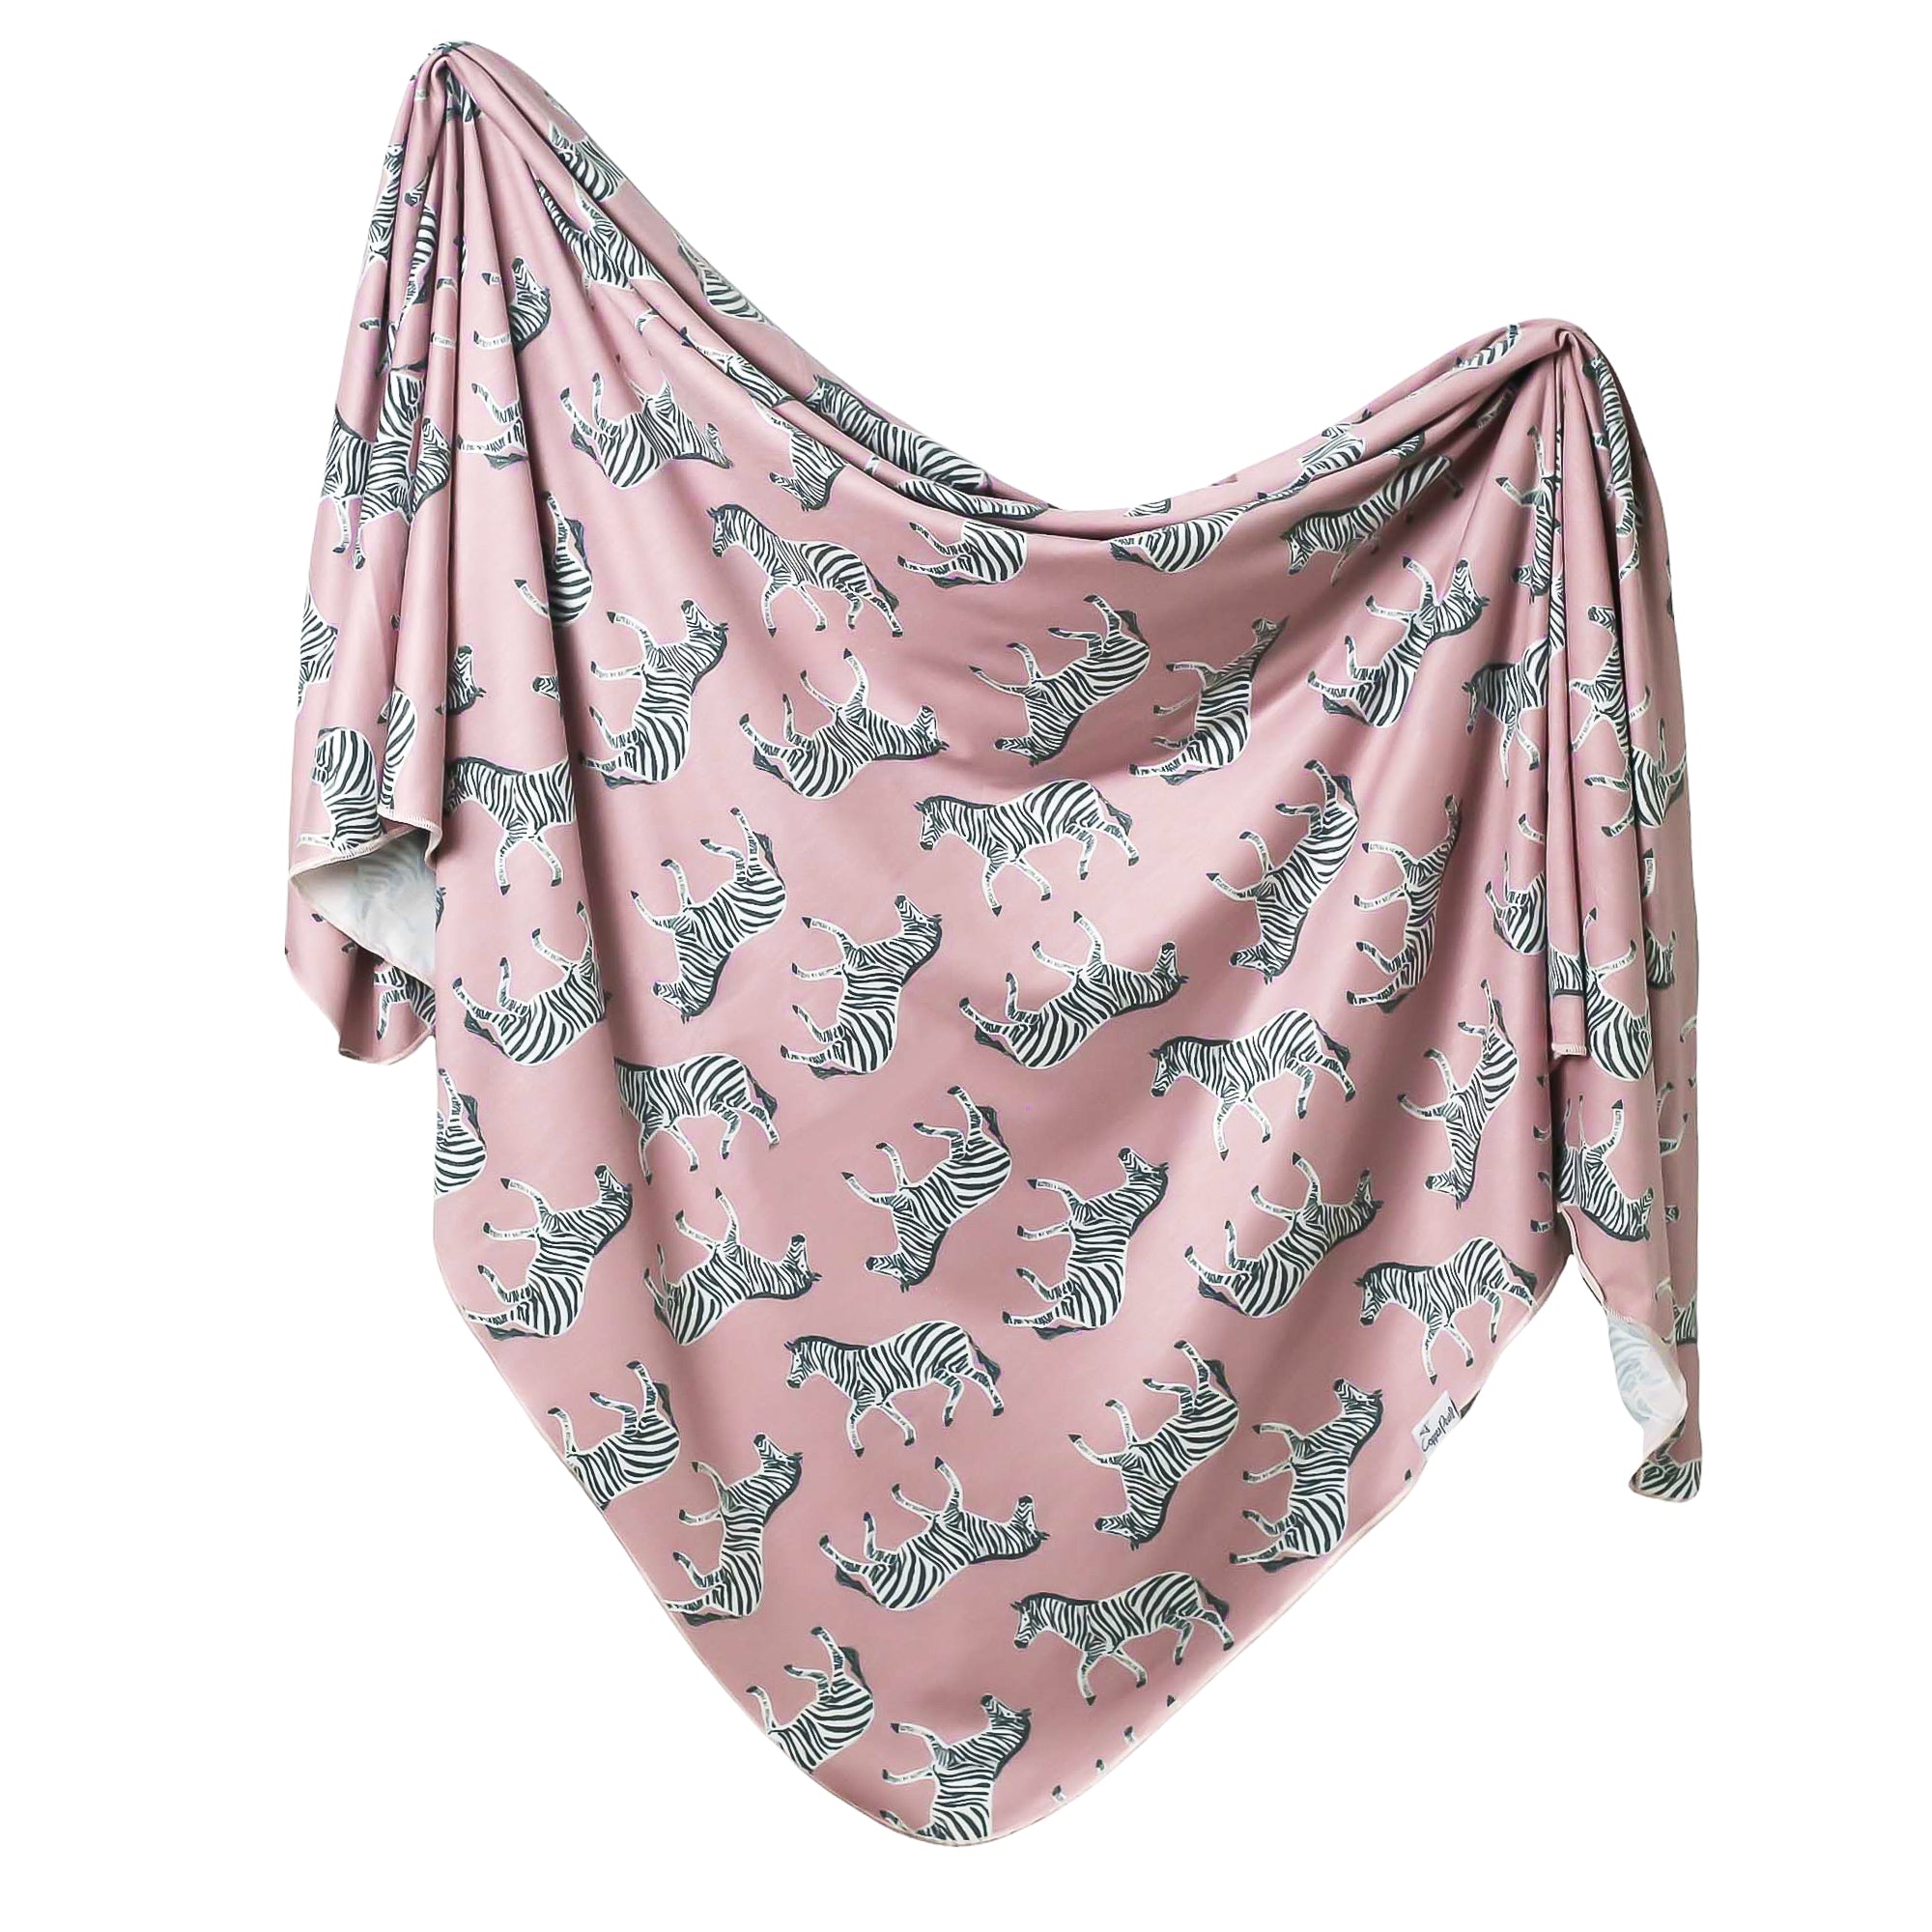 Knit Swaddle Blanket - Zella